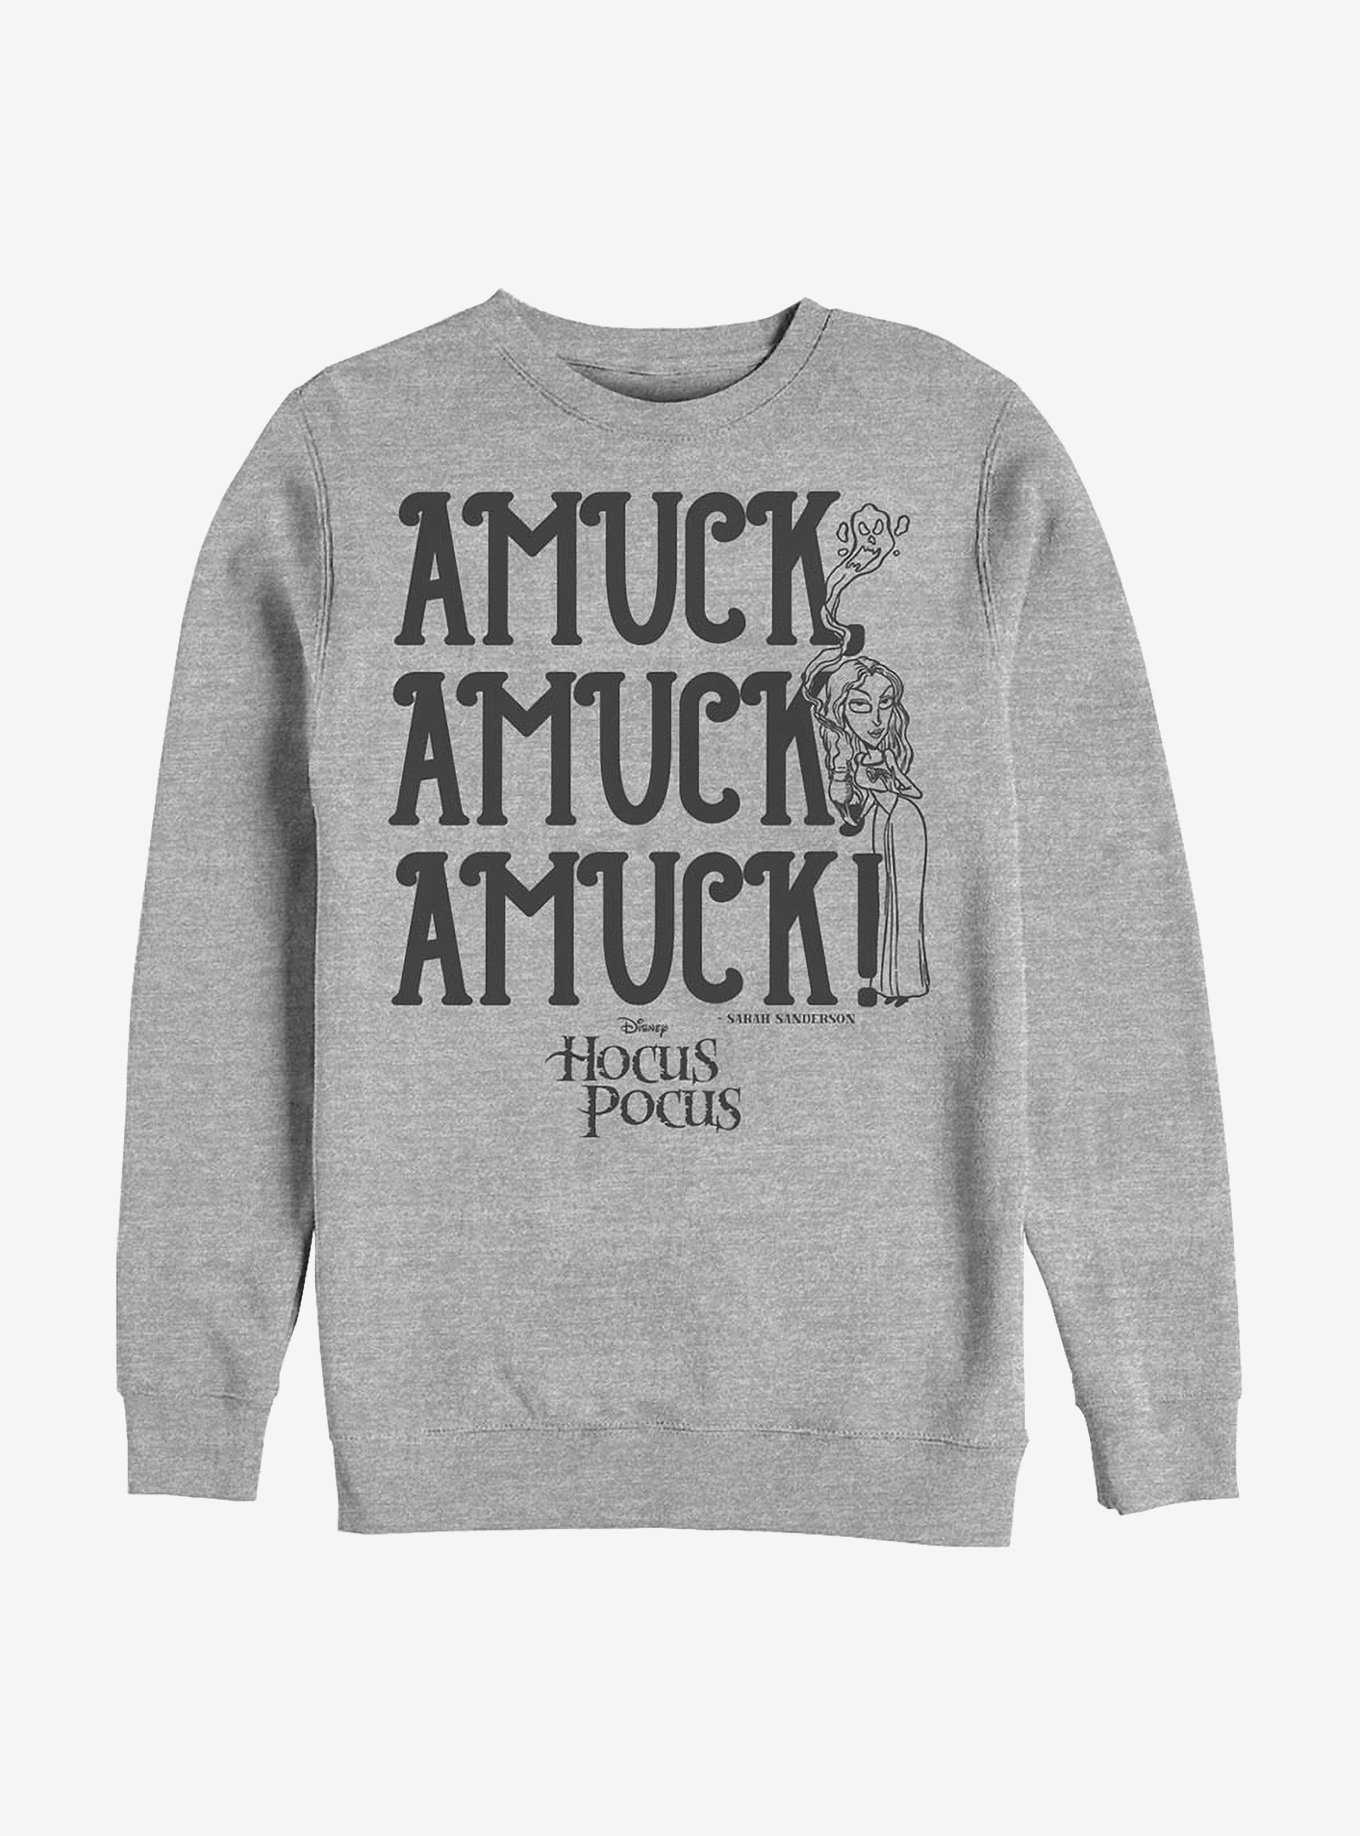 Disney Hocus Pocus Amuck Crew Sweatshirt, , hi-res